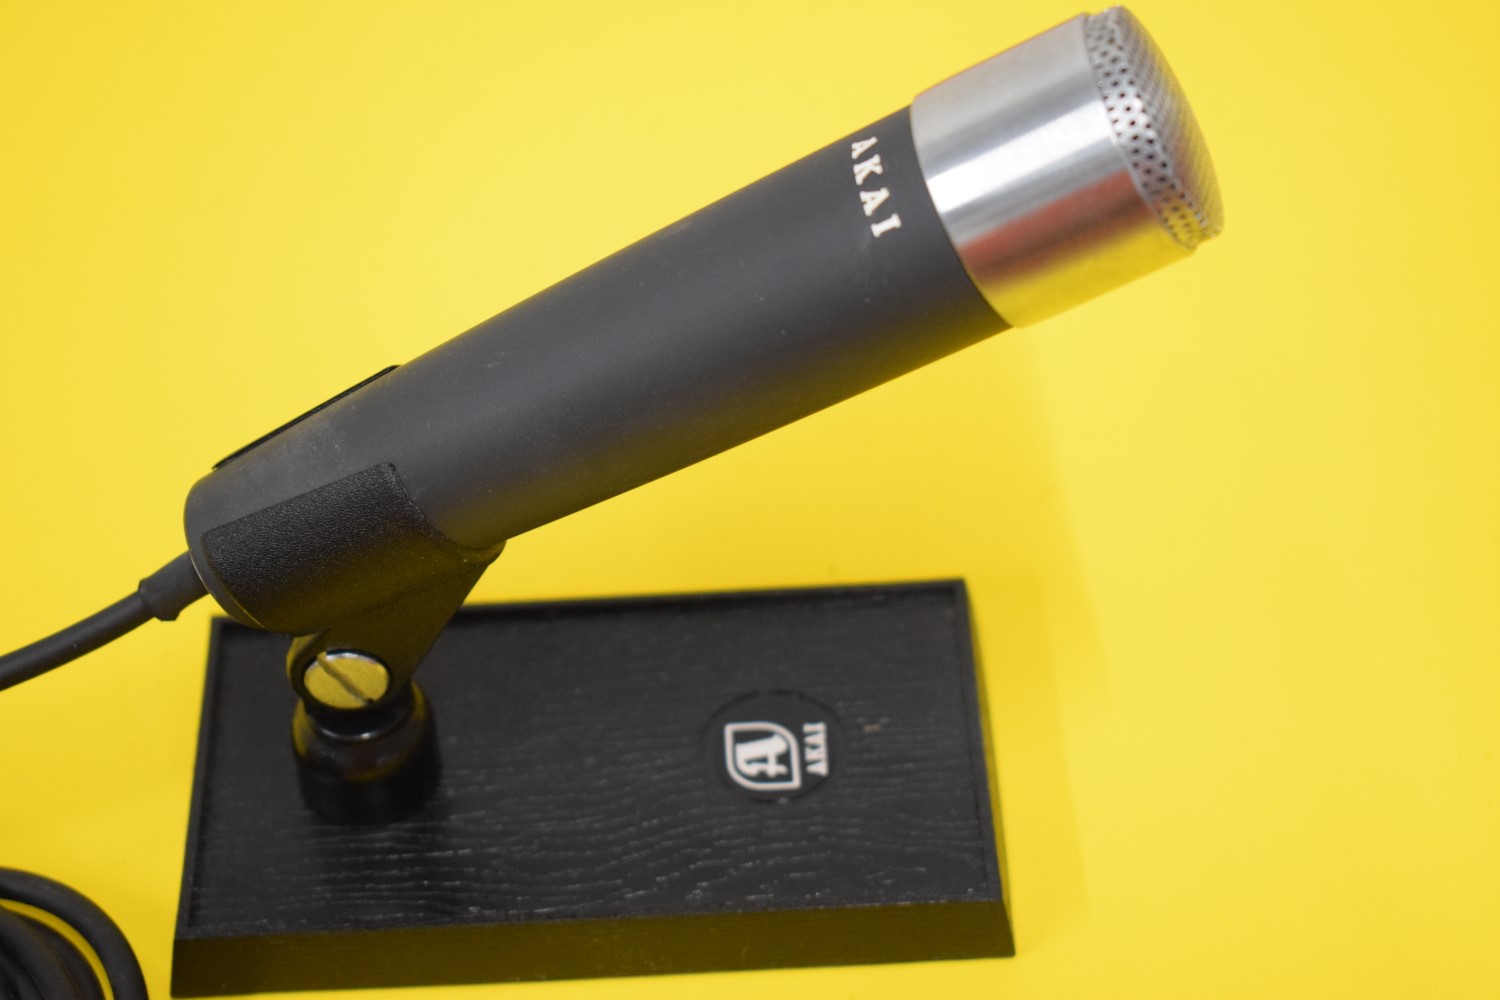 Akai DM-13 Mikrofon – In Originale Verpackung